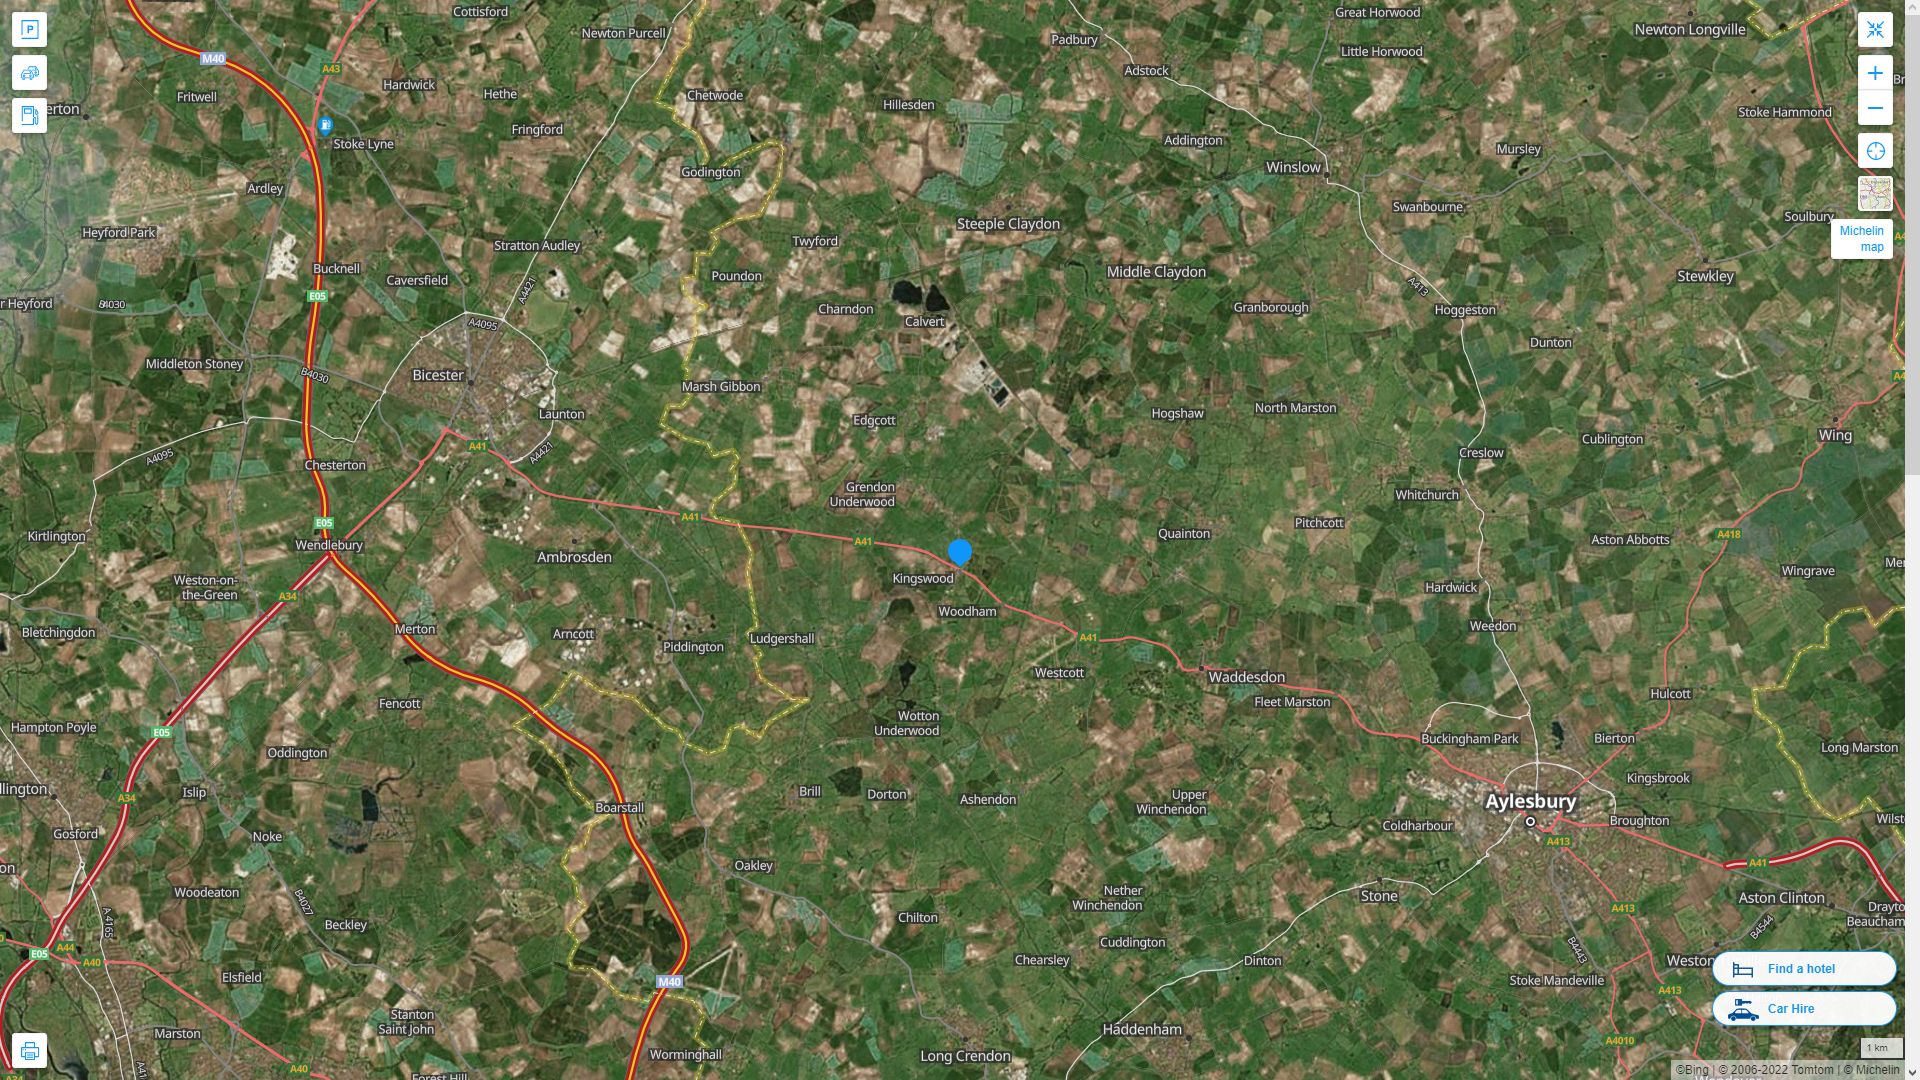 Kingswood Royaume Uni Autoroute et carte routiere avec vue satellite